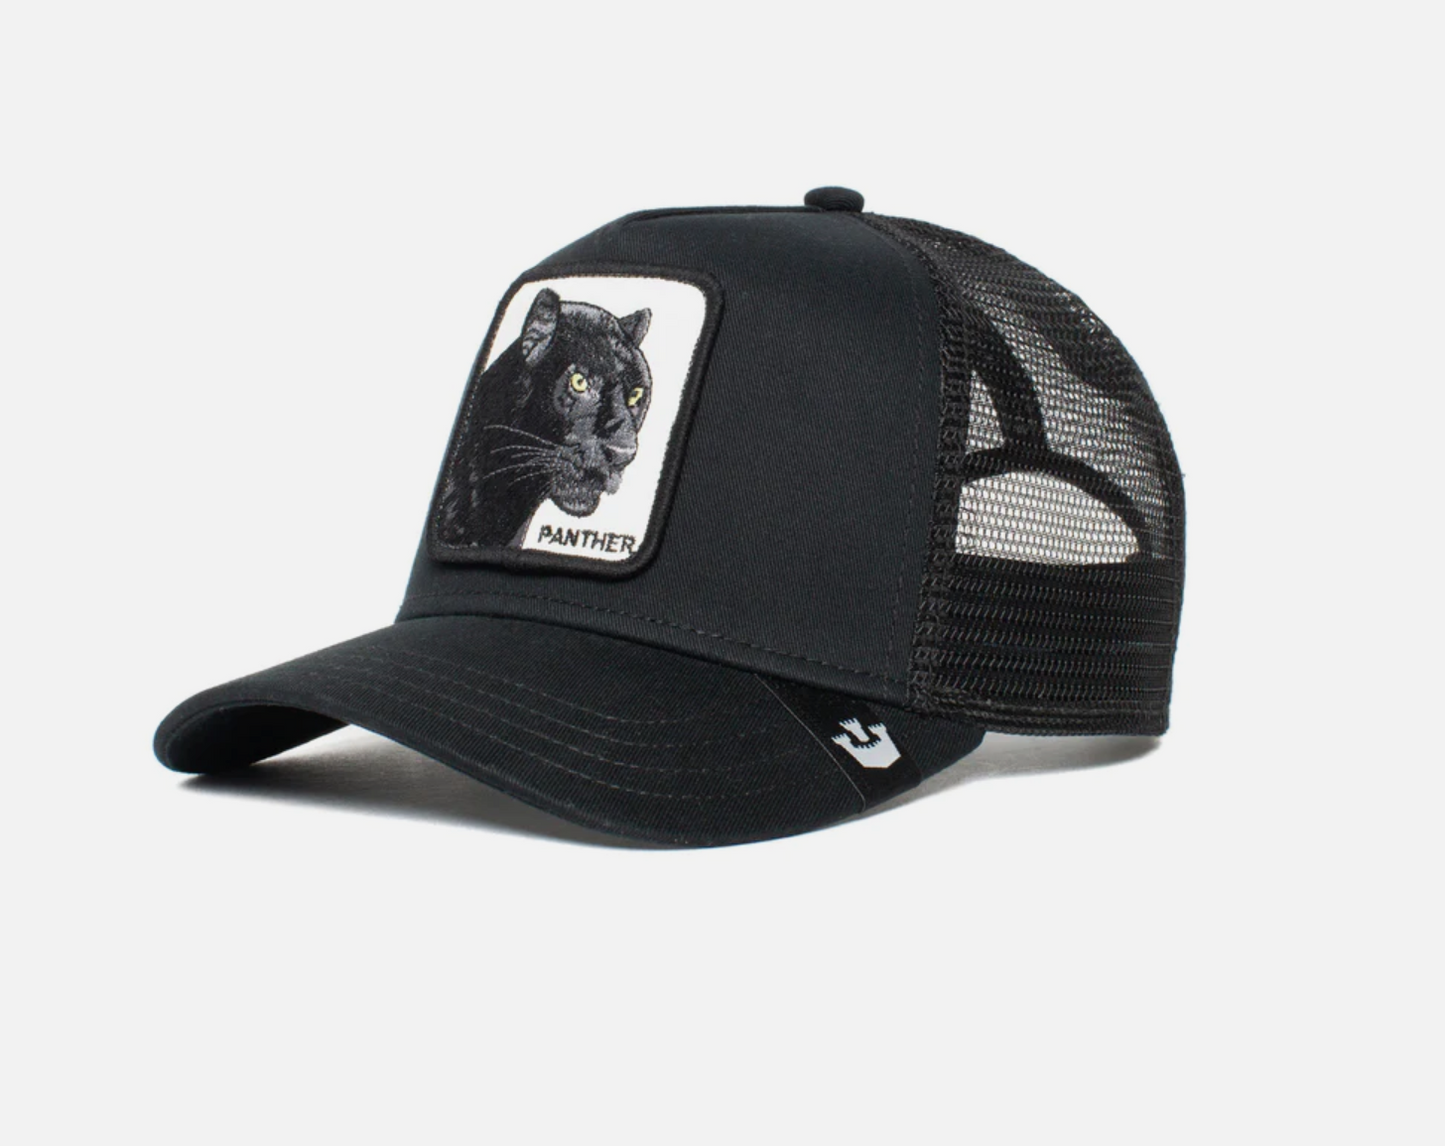 The Panther Black Trucker Hat - Goorin Bros